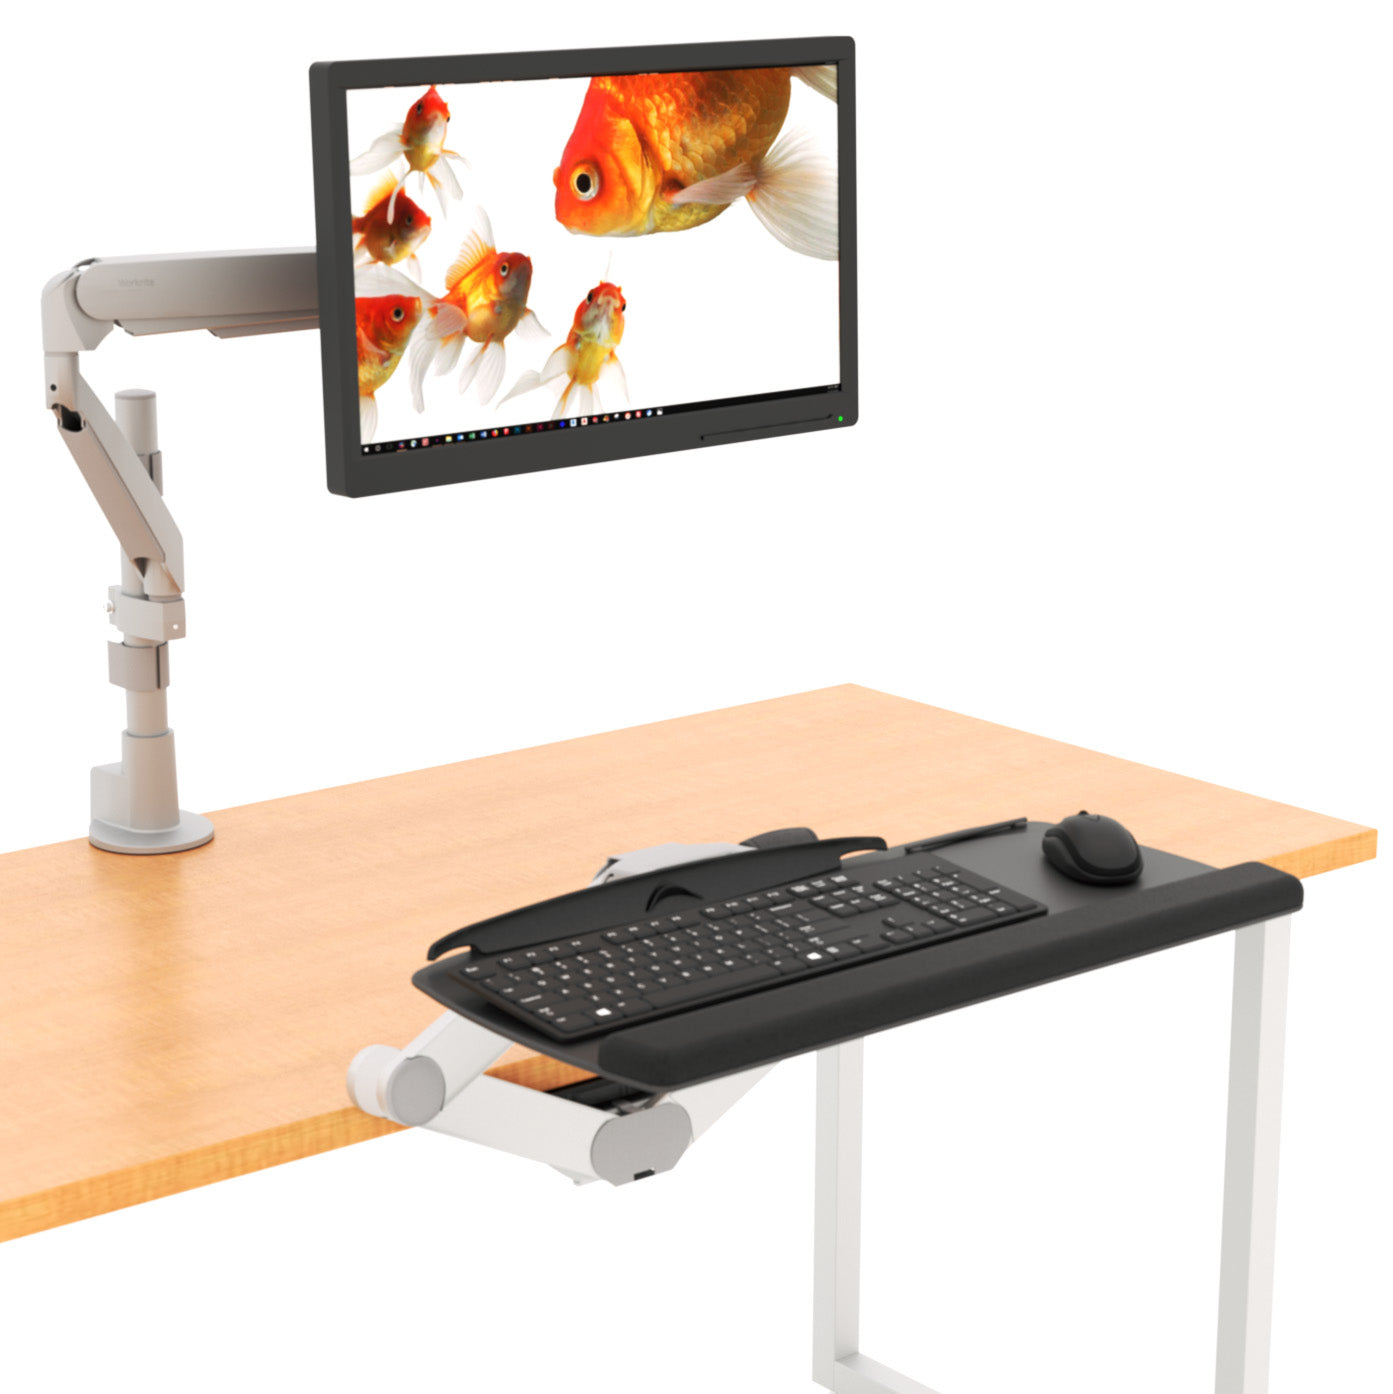 Accessories - Sit Stand Desk Accessories - Workrite Ergonomics